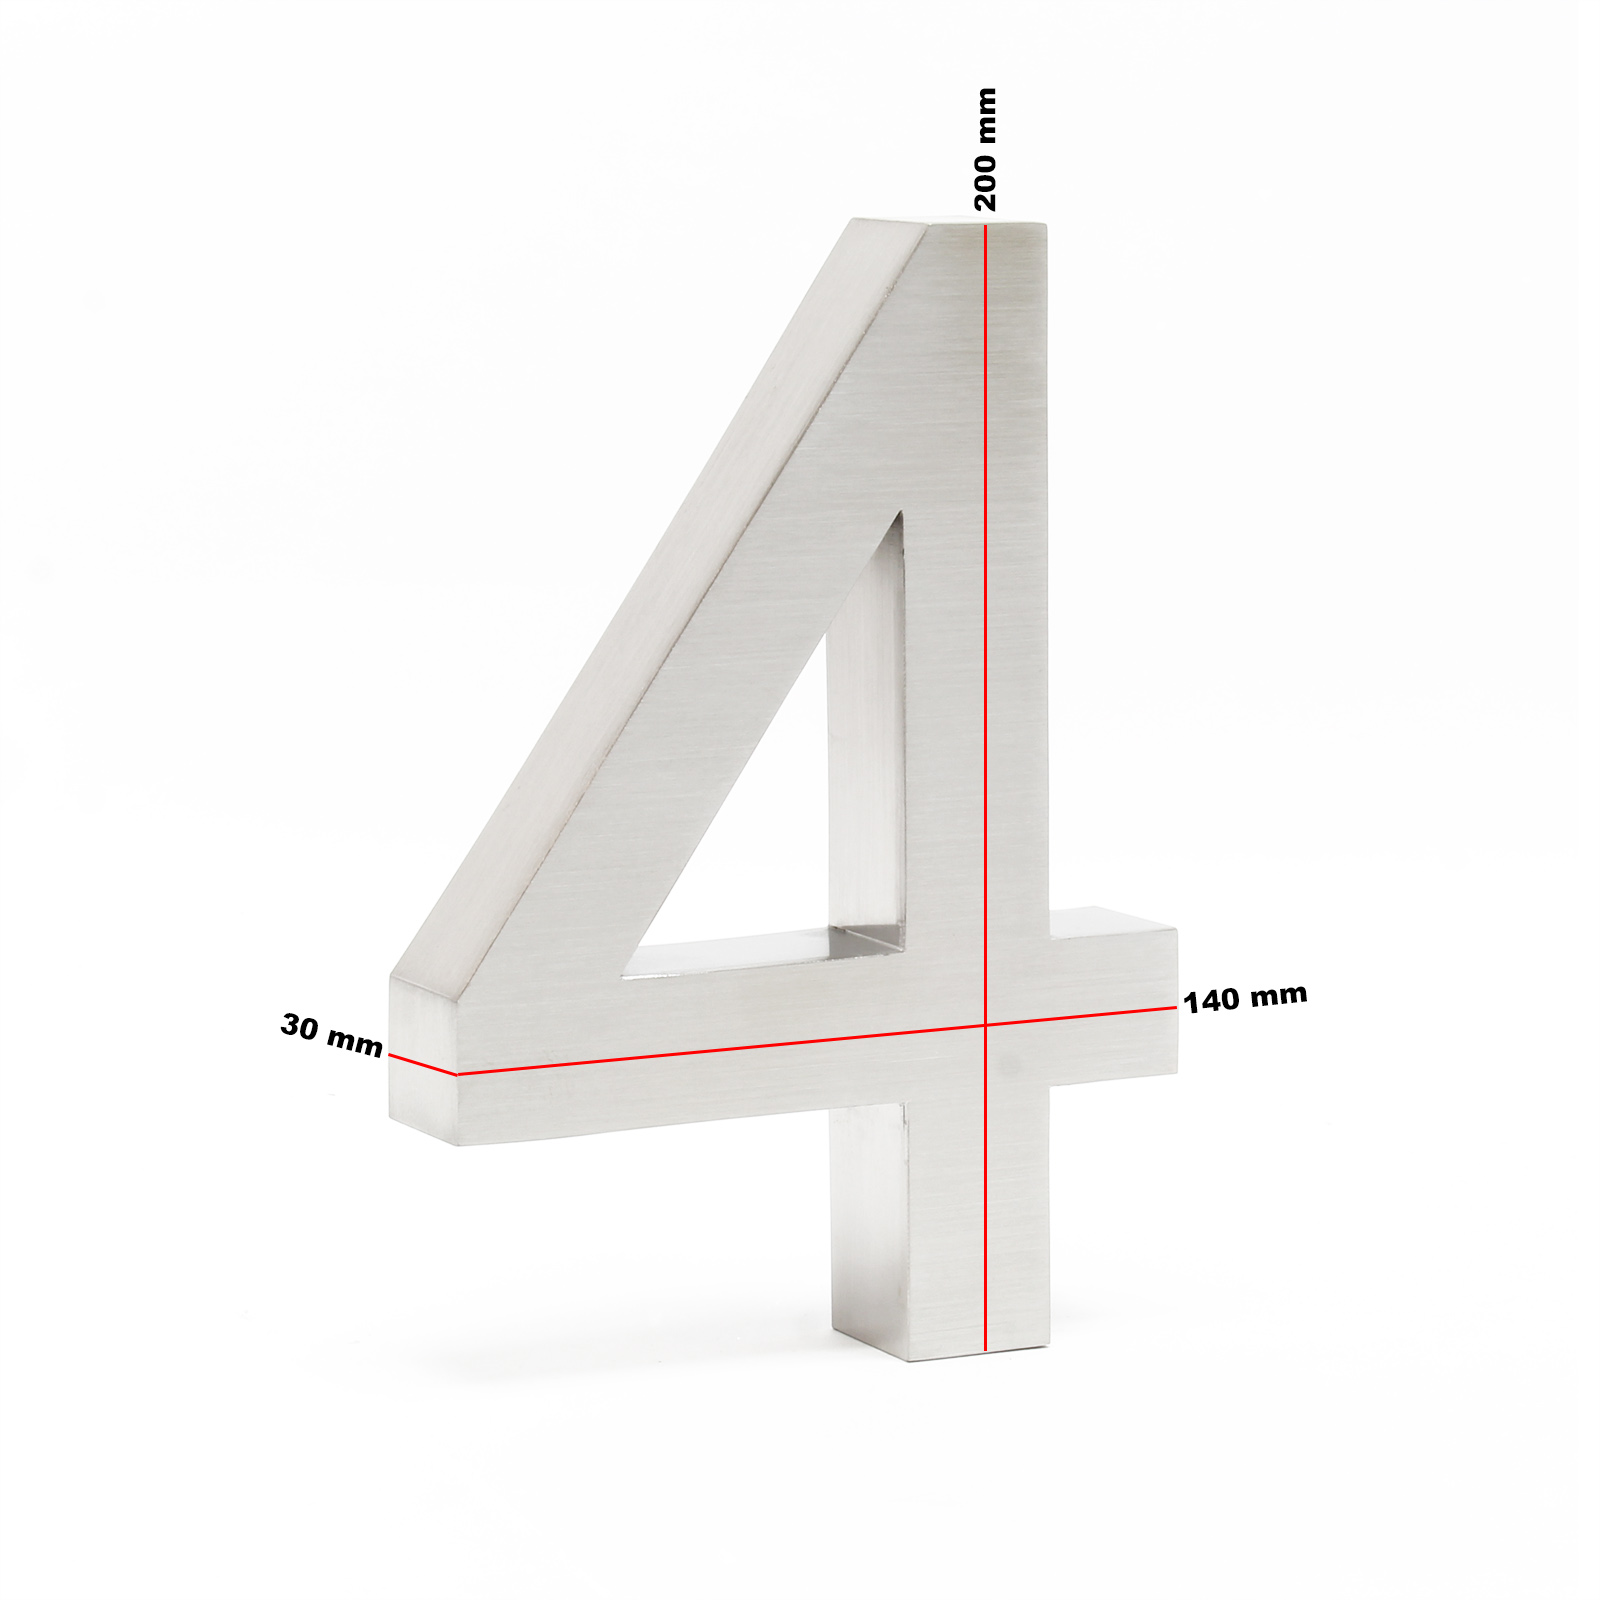 WilTec Plaque Numéro Maison Chiffre 0 3D 20cm Acier Inoxydable Résistant Intempéries Matériel Fixation 